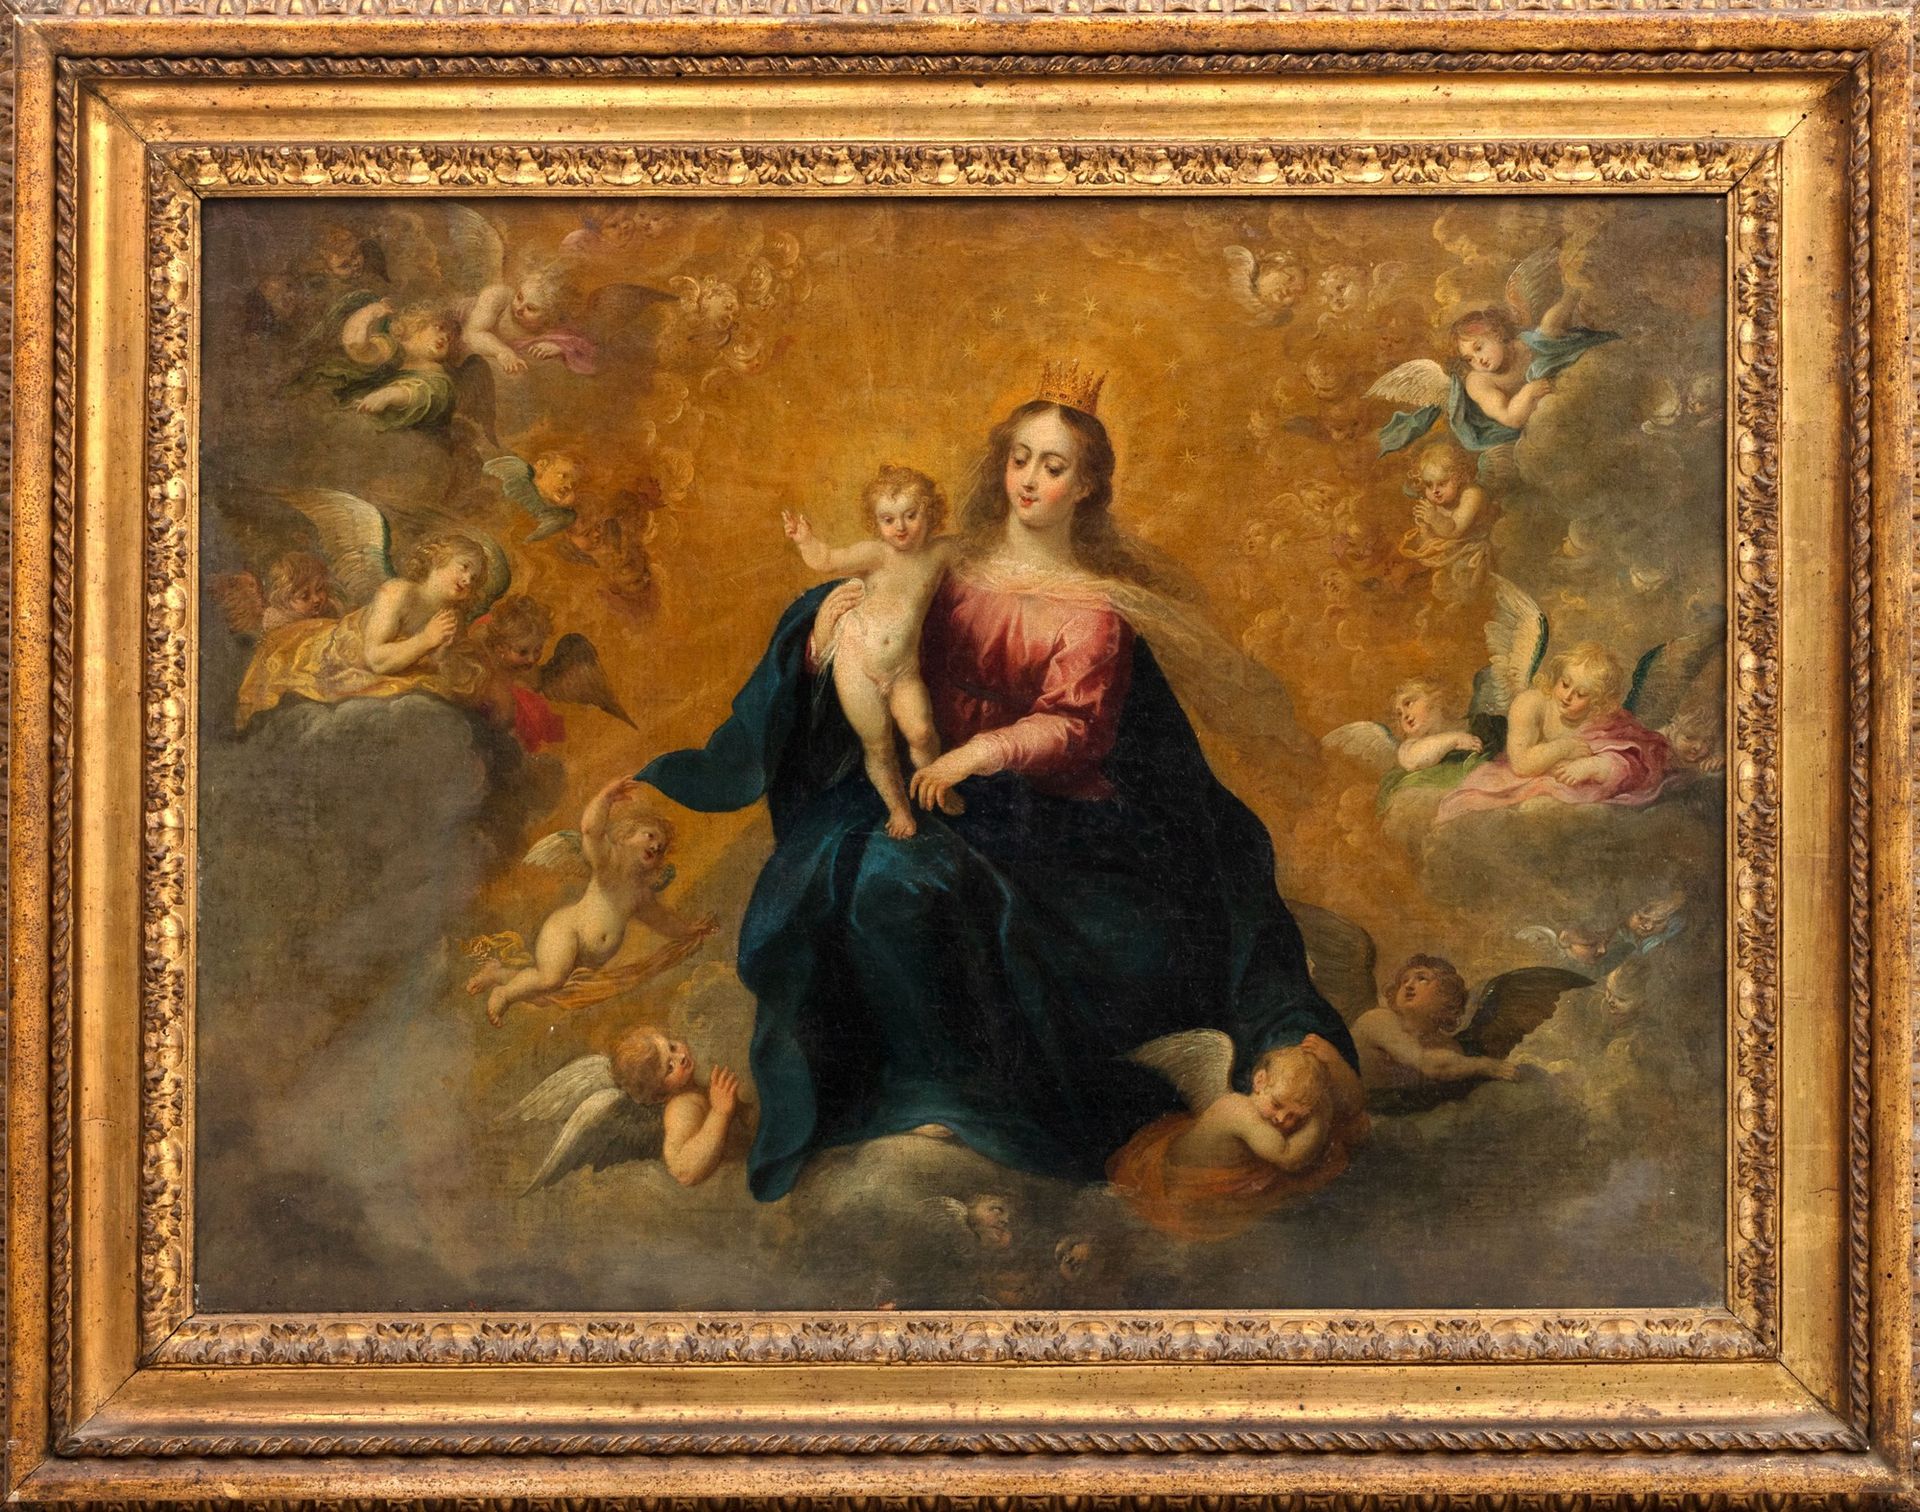 Scuola fiamminga, secolo XVII 天使中的圣母与儿童

布面油画
53.5 x 76 cm